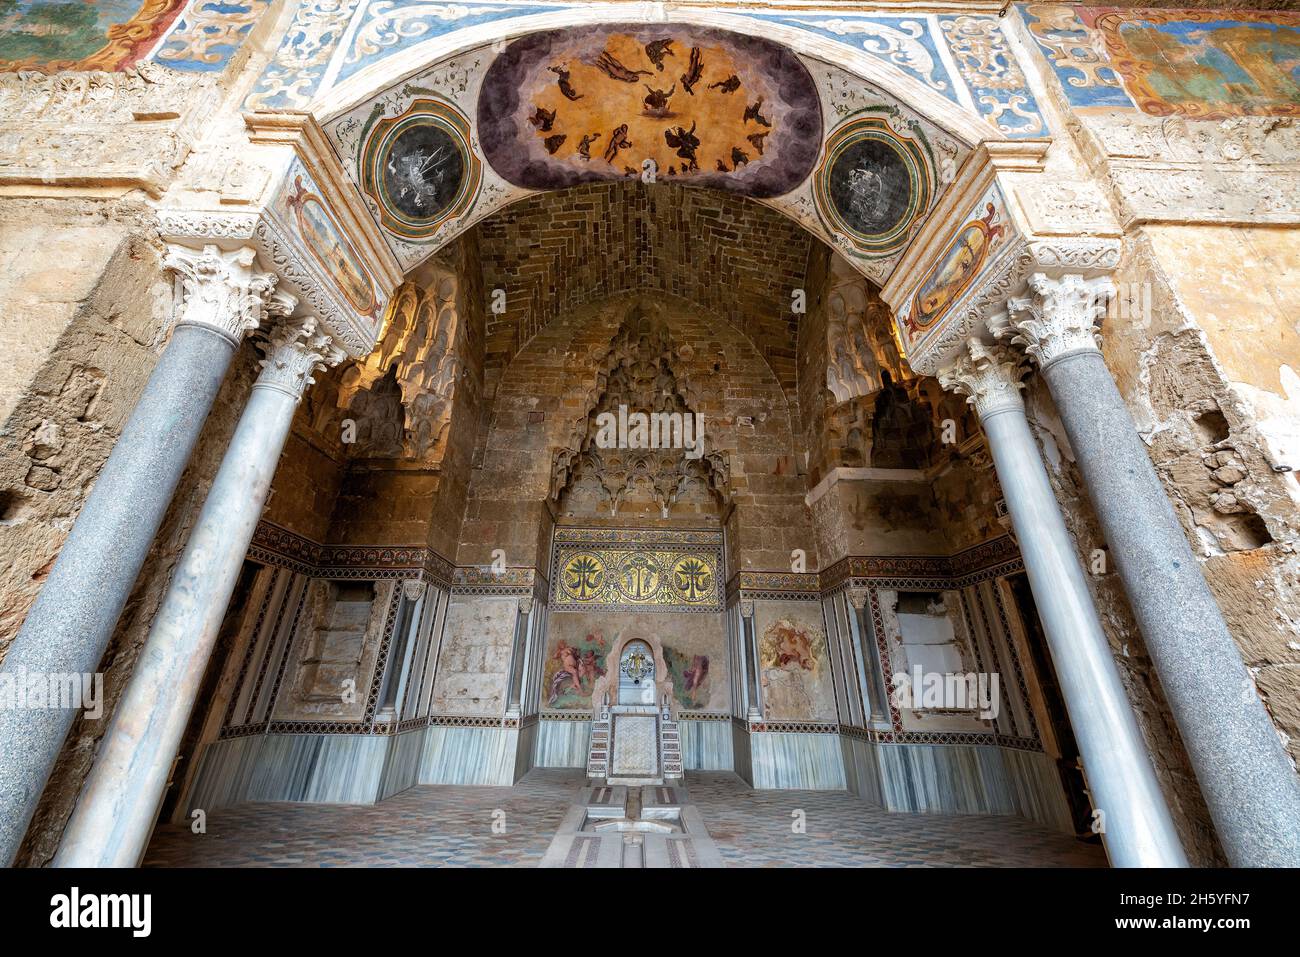 Vista de la impresionante arquitectura en Palermo, Italia Foto de stock